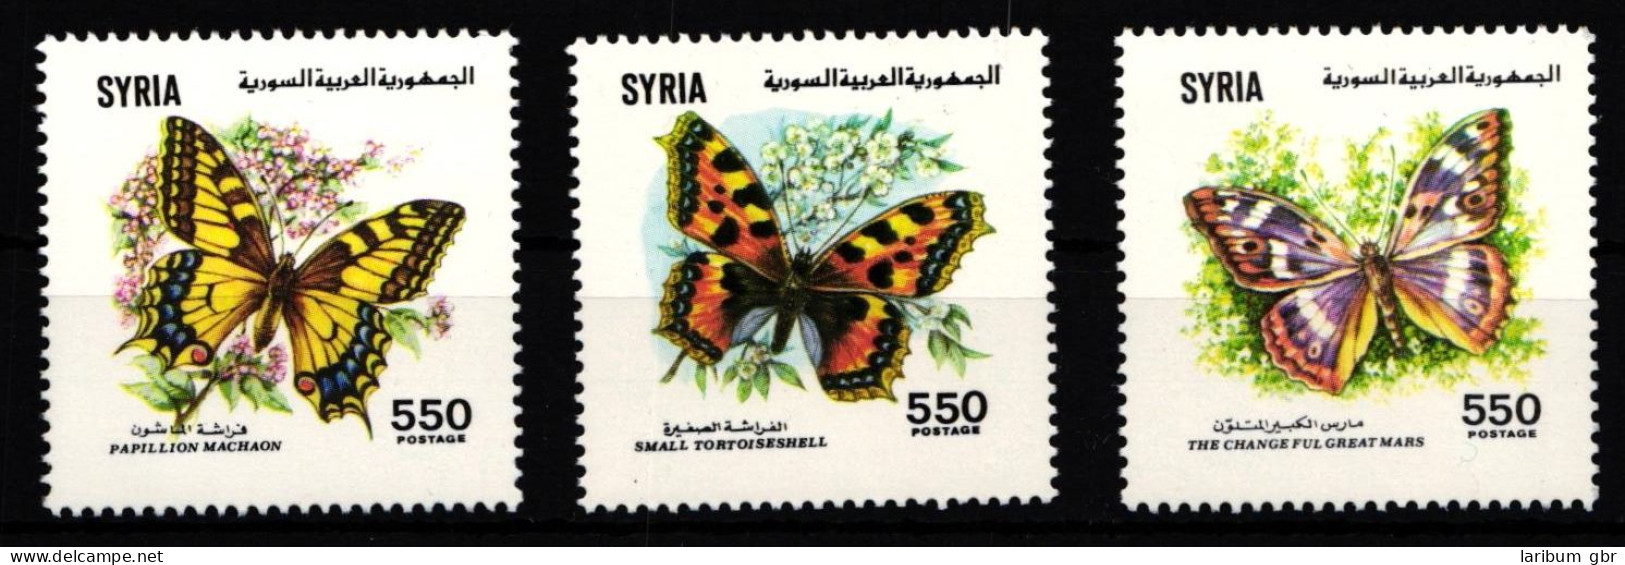 Syrien 1821-1823 Postfrisch Schmetterling #IH068 - Syria